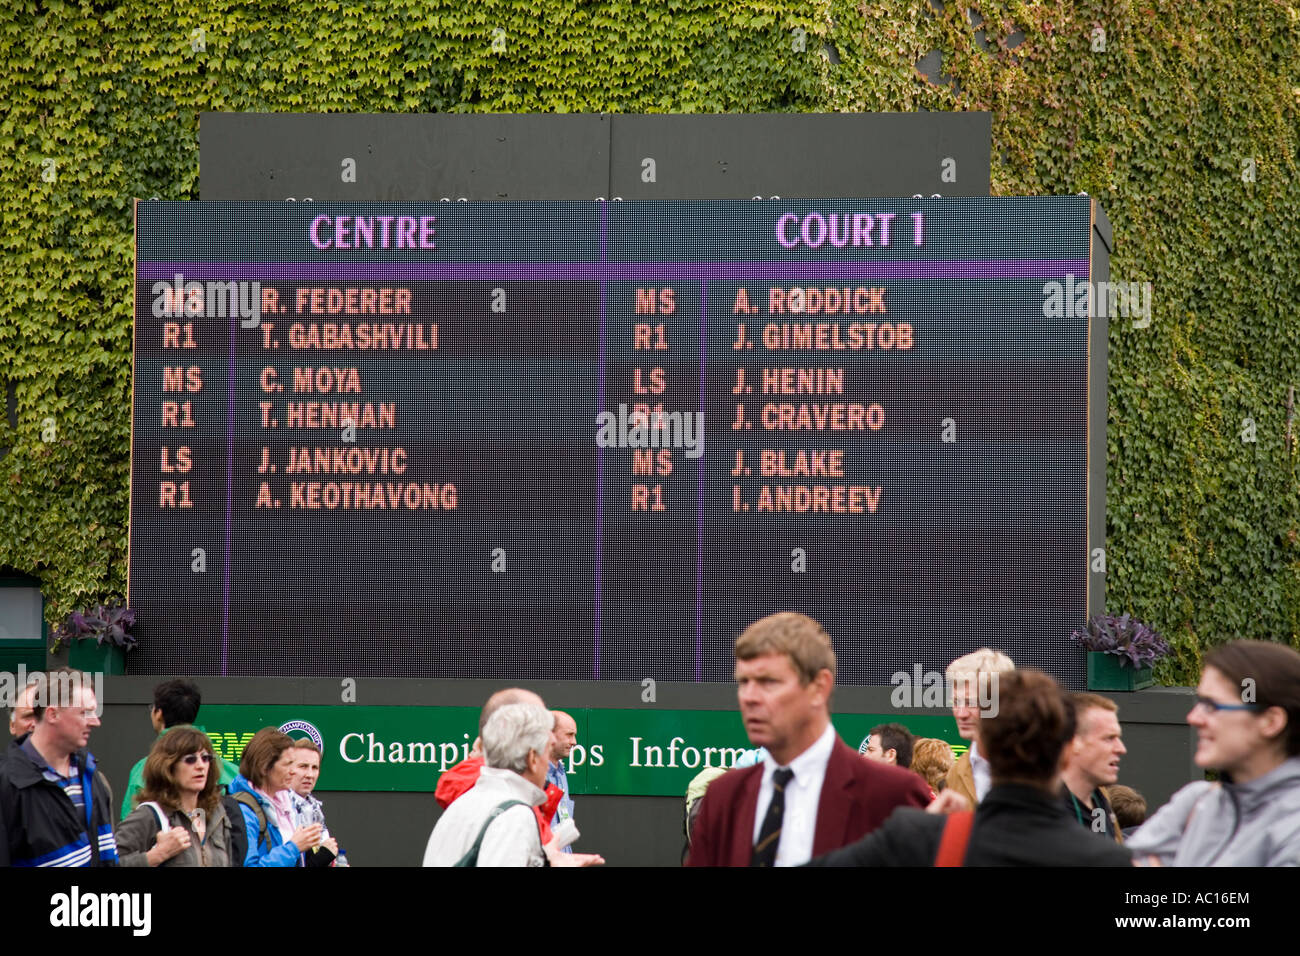 Orden de juego para el centro de la cancha y corte número 1 en la jornada inaugural del Campeonato de tenis de Wimbledon. UK Foto de stock